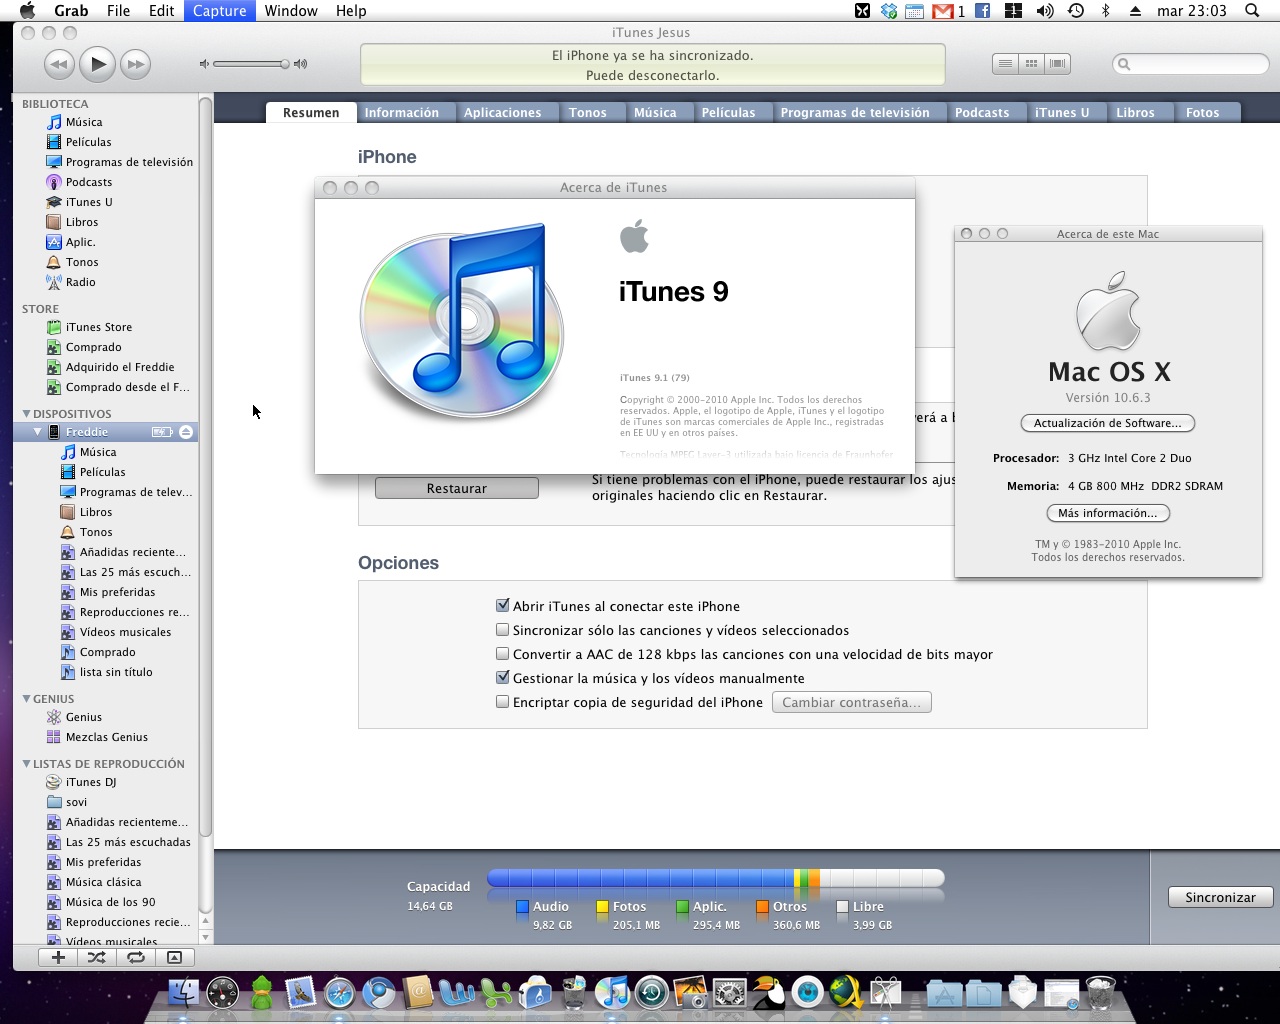 Free Mac Os X 10.6